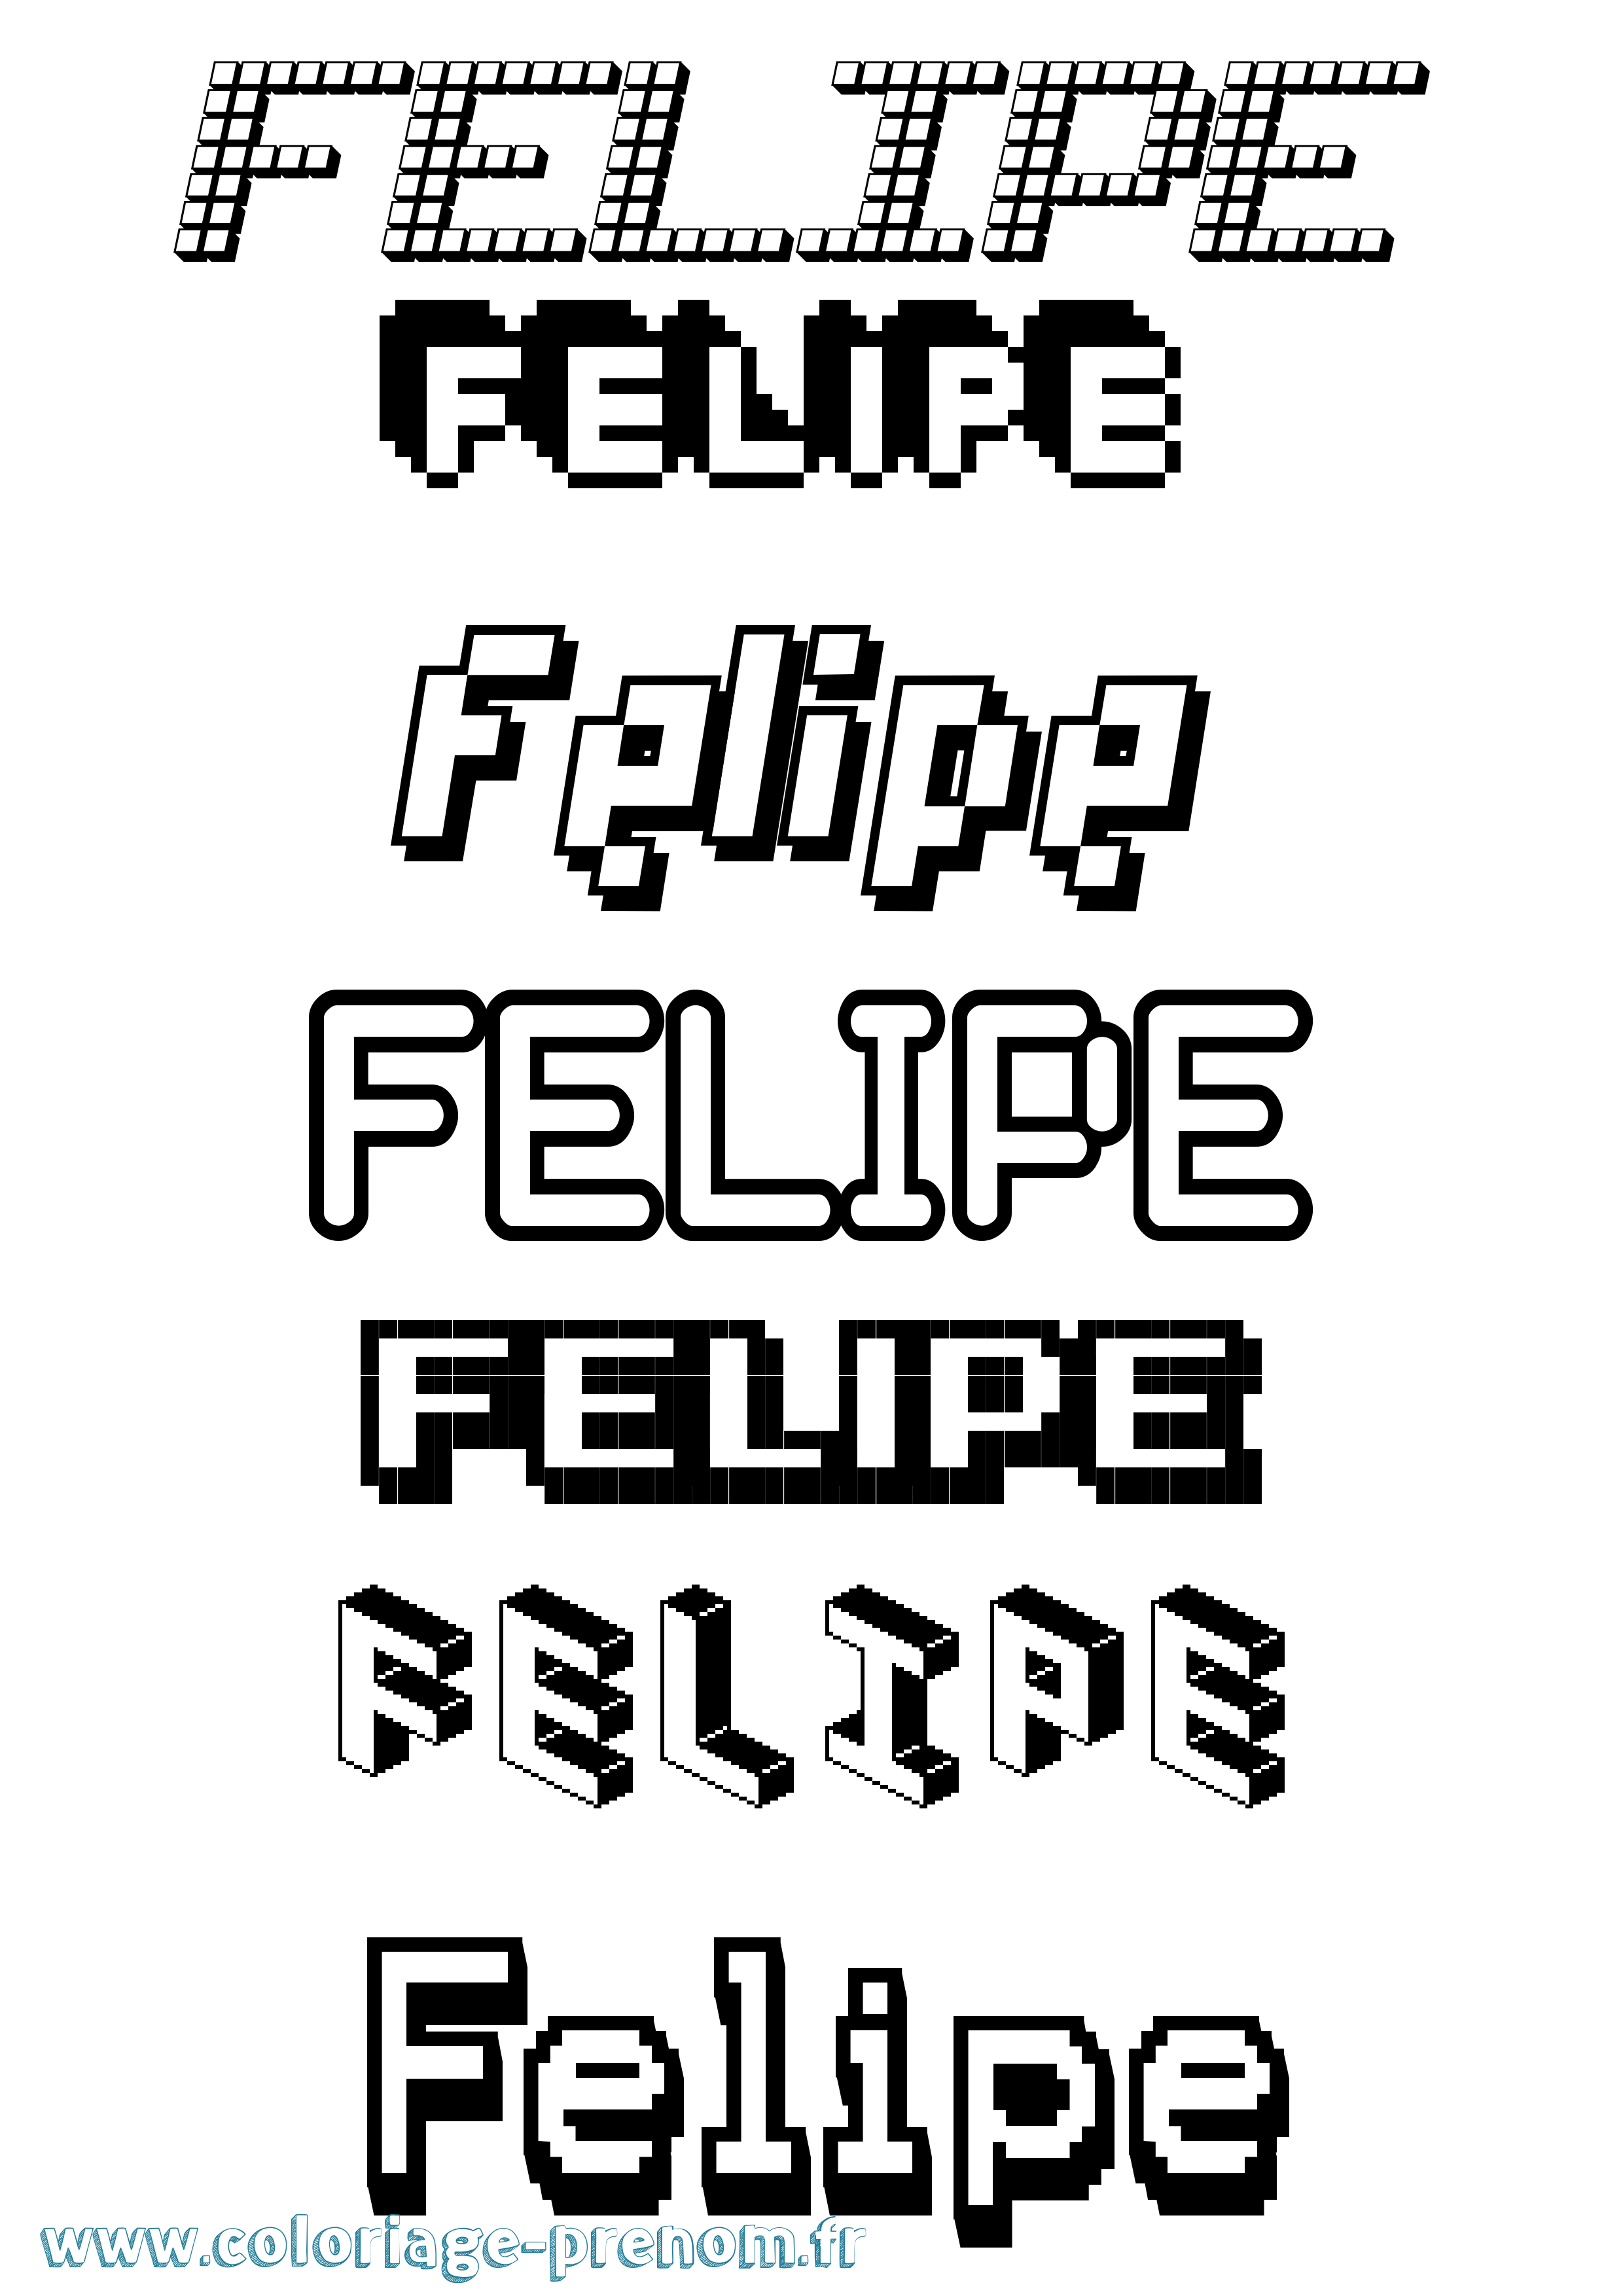 Coloriage prénom Felipe Pixel